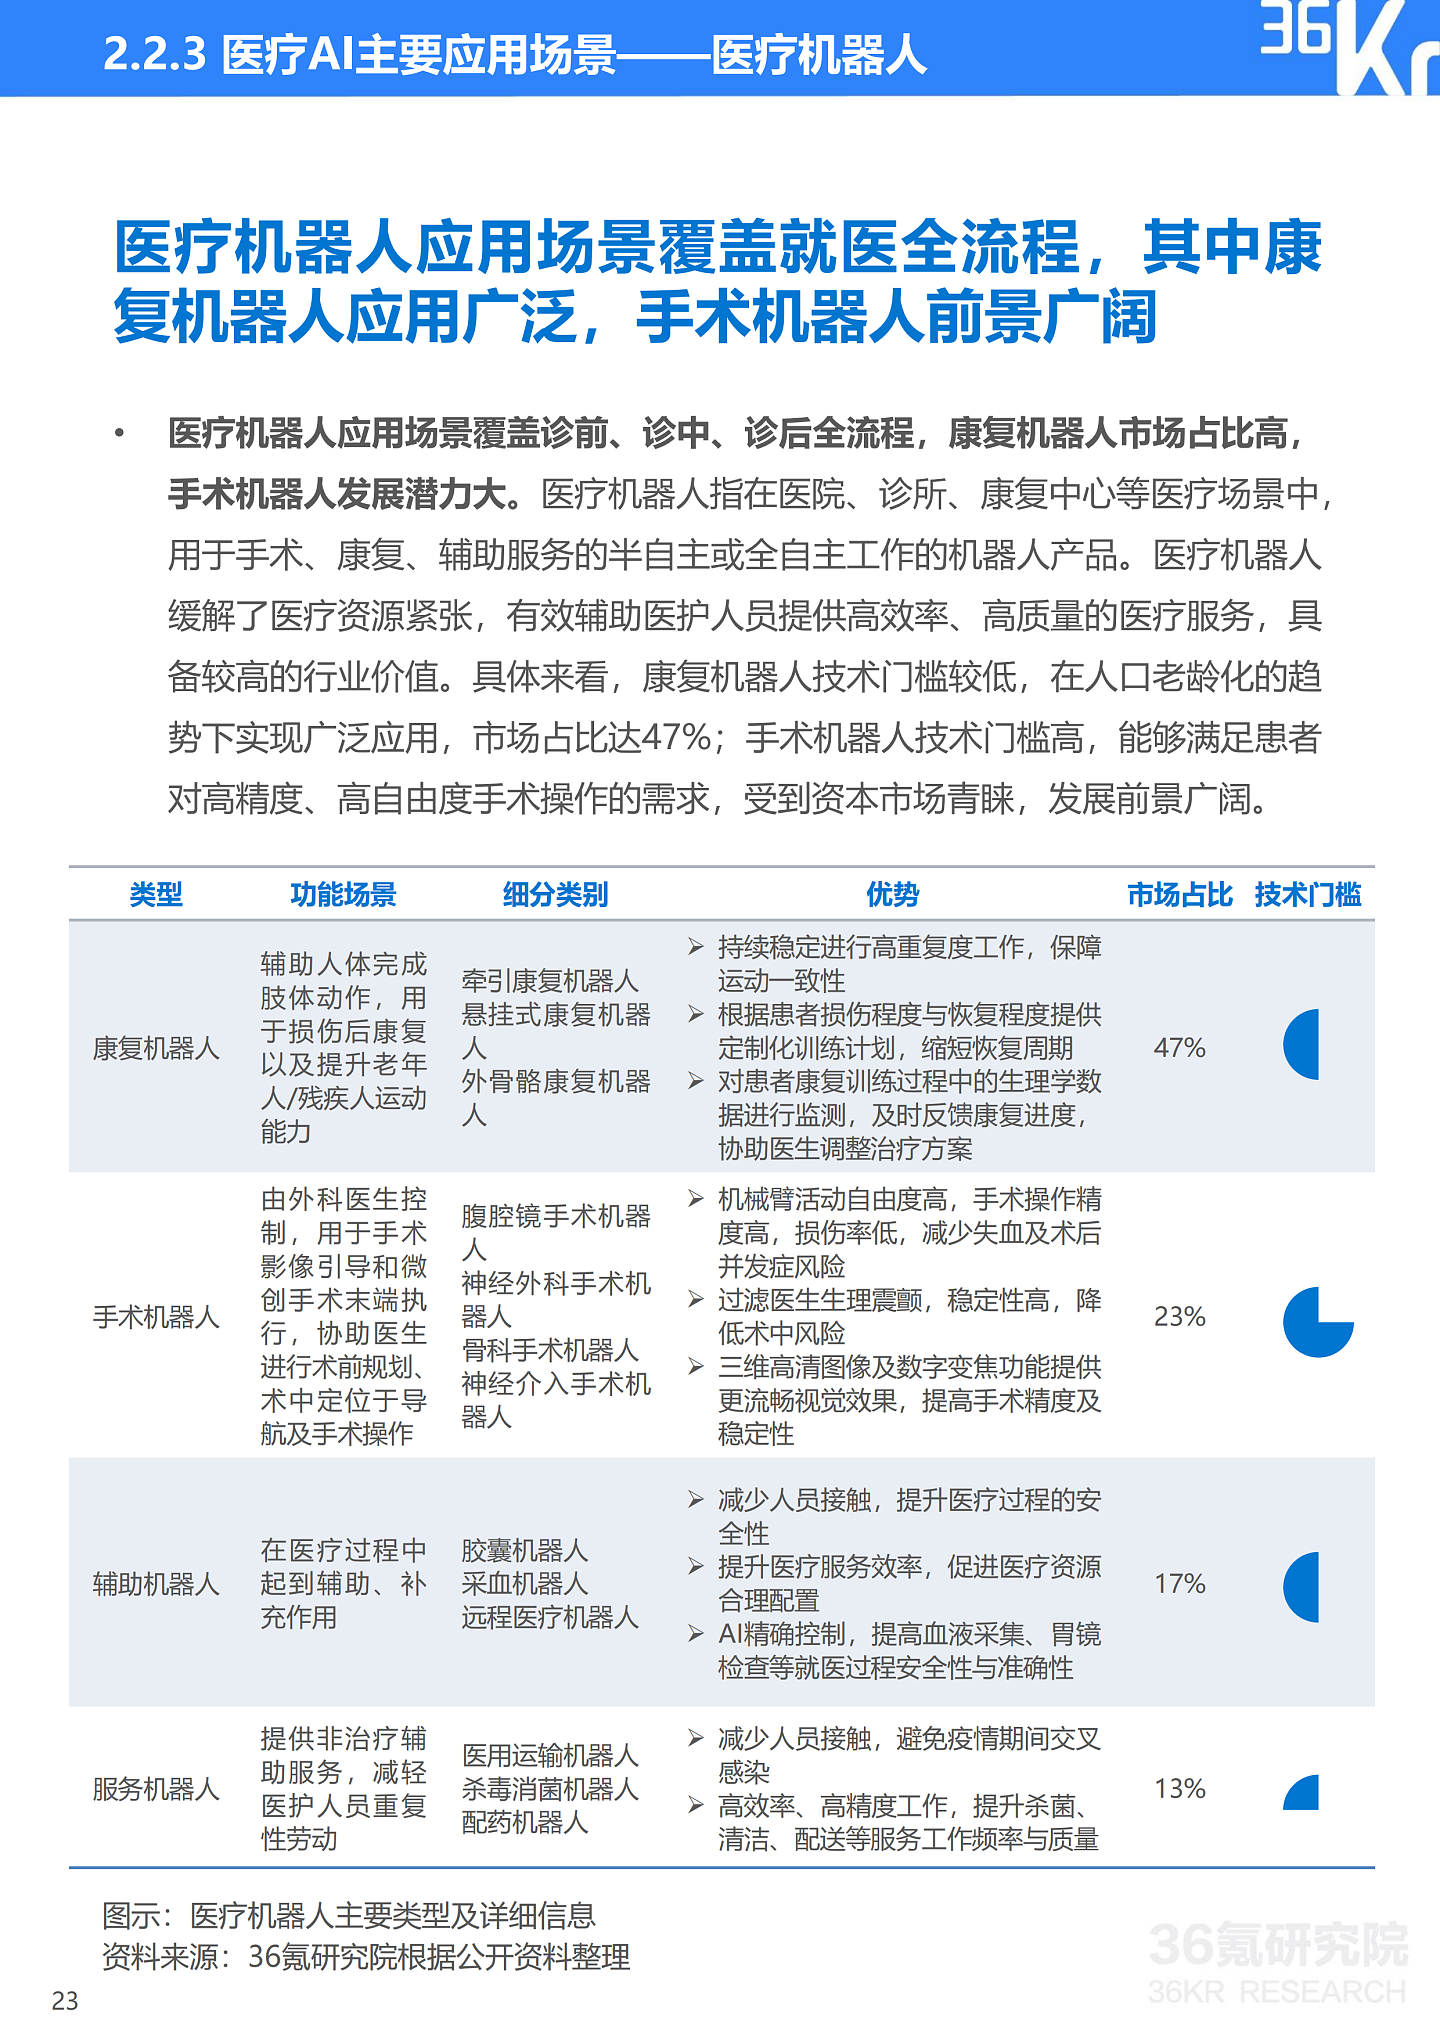 36氪研究院 | 2021年中国医疗AI行业研究报告 - 26